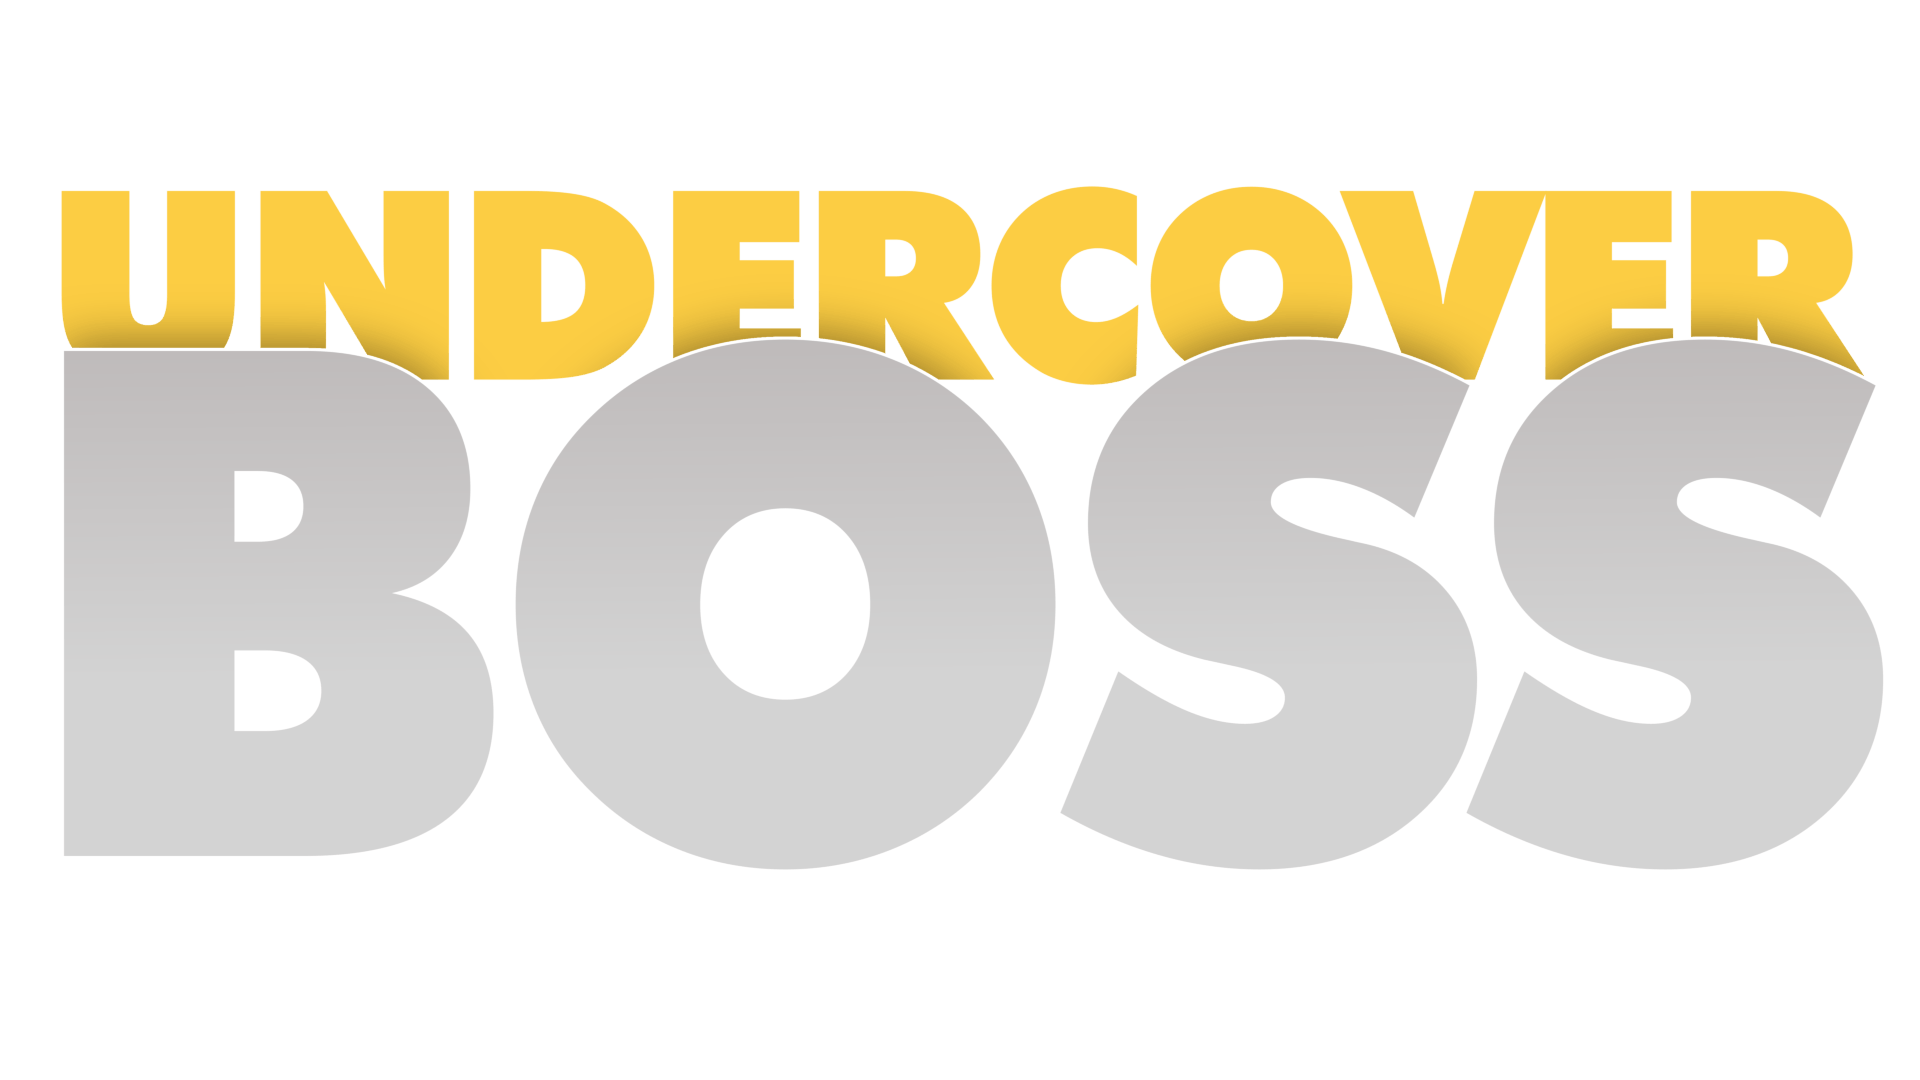 Undercover Boss Logo - Undercover Boss binnen Trigion Beveiliging | Trigion